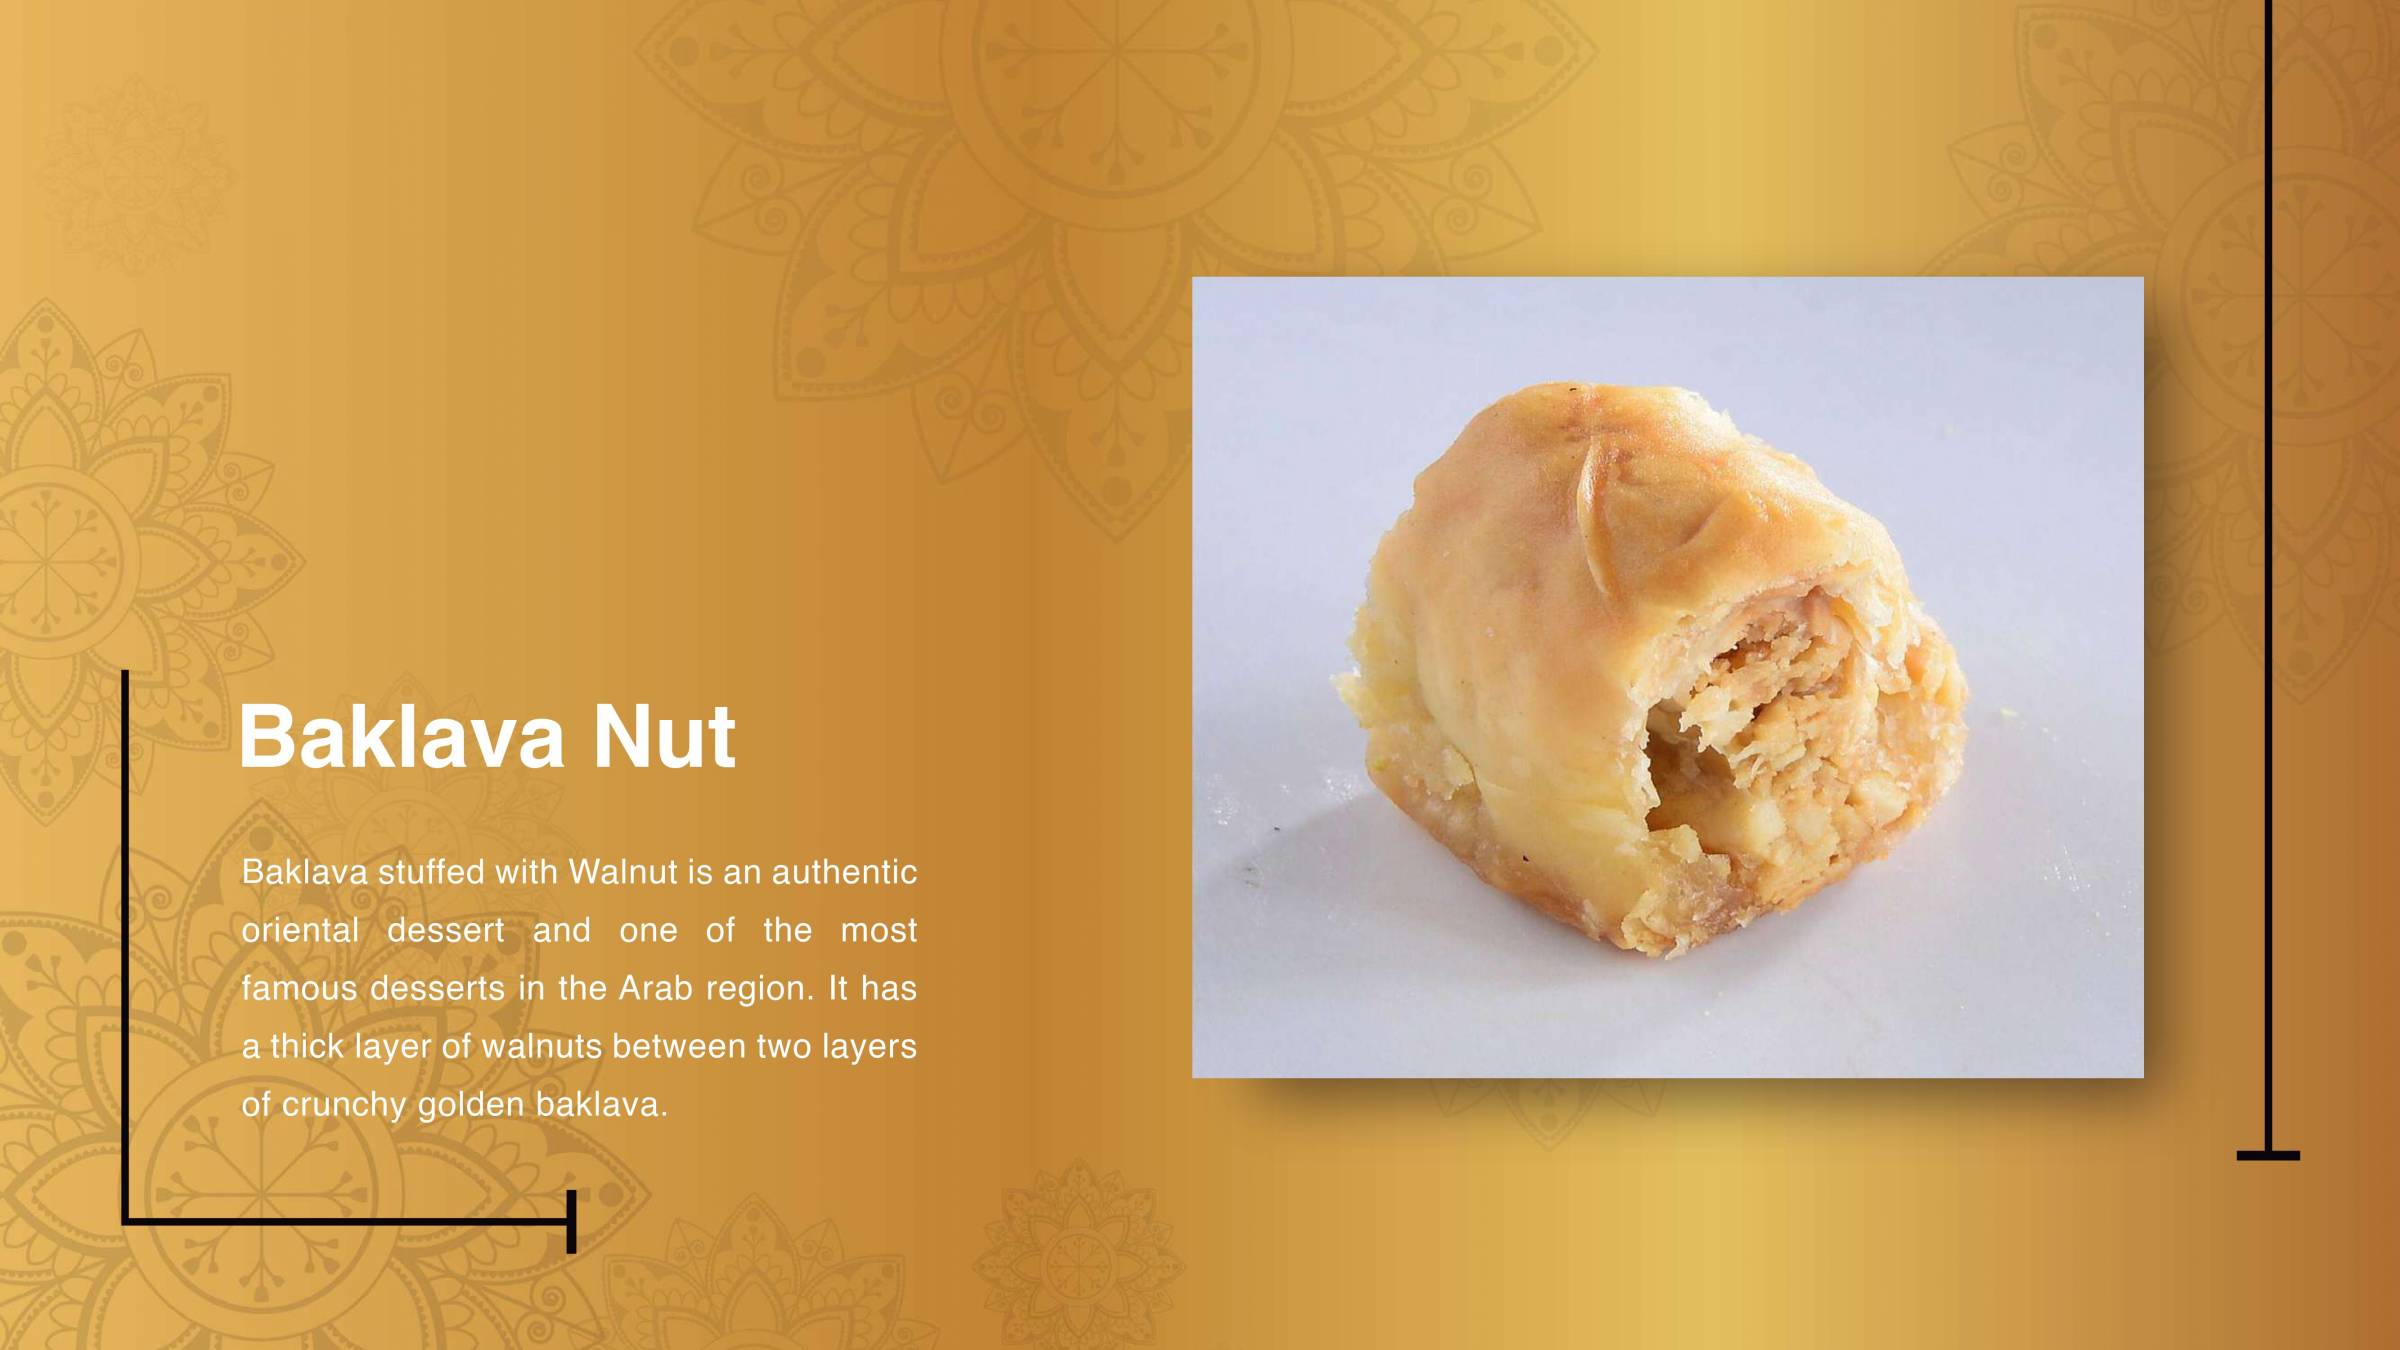 Baklava Nut